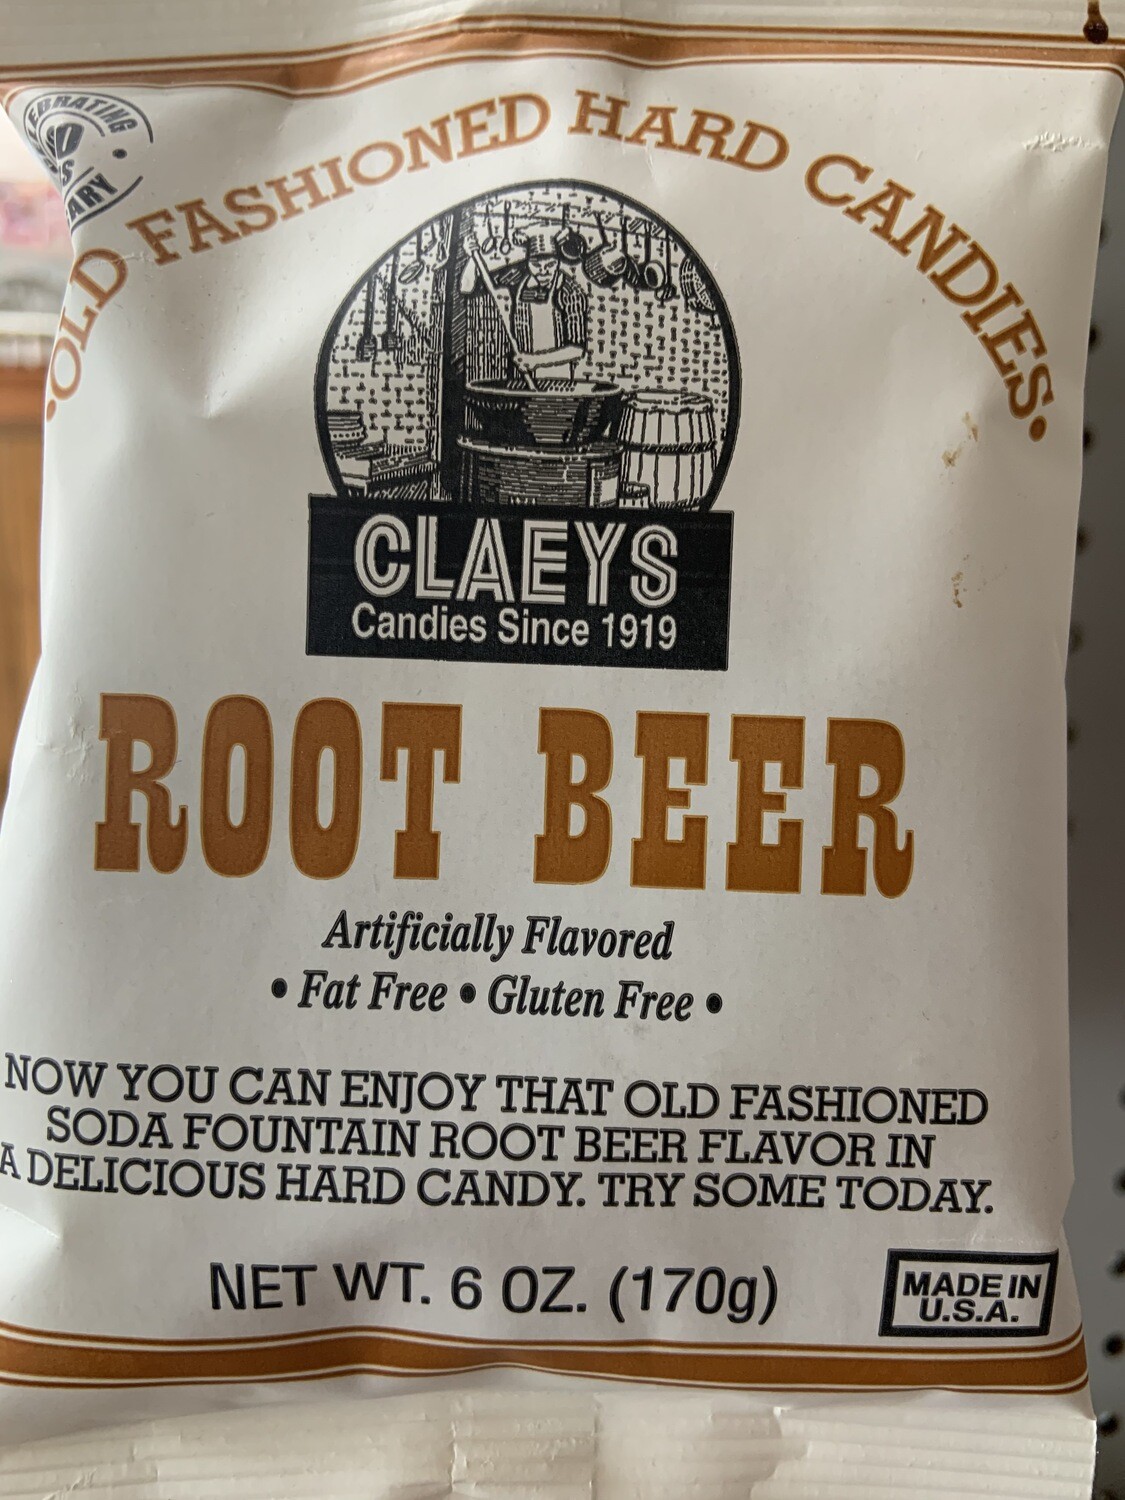 Clay's Root Beer